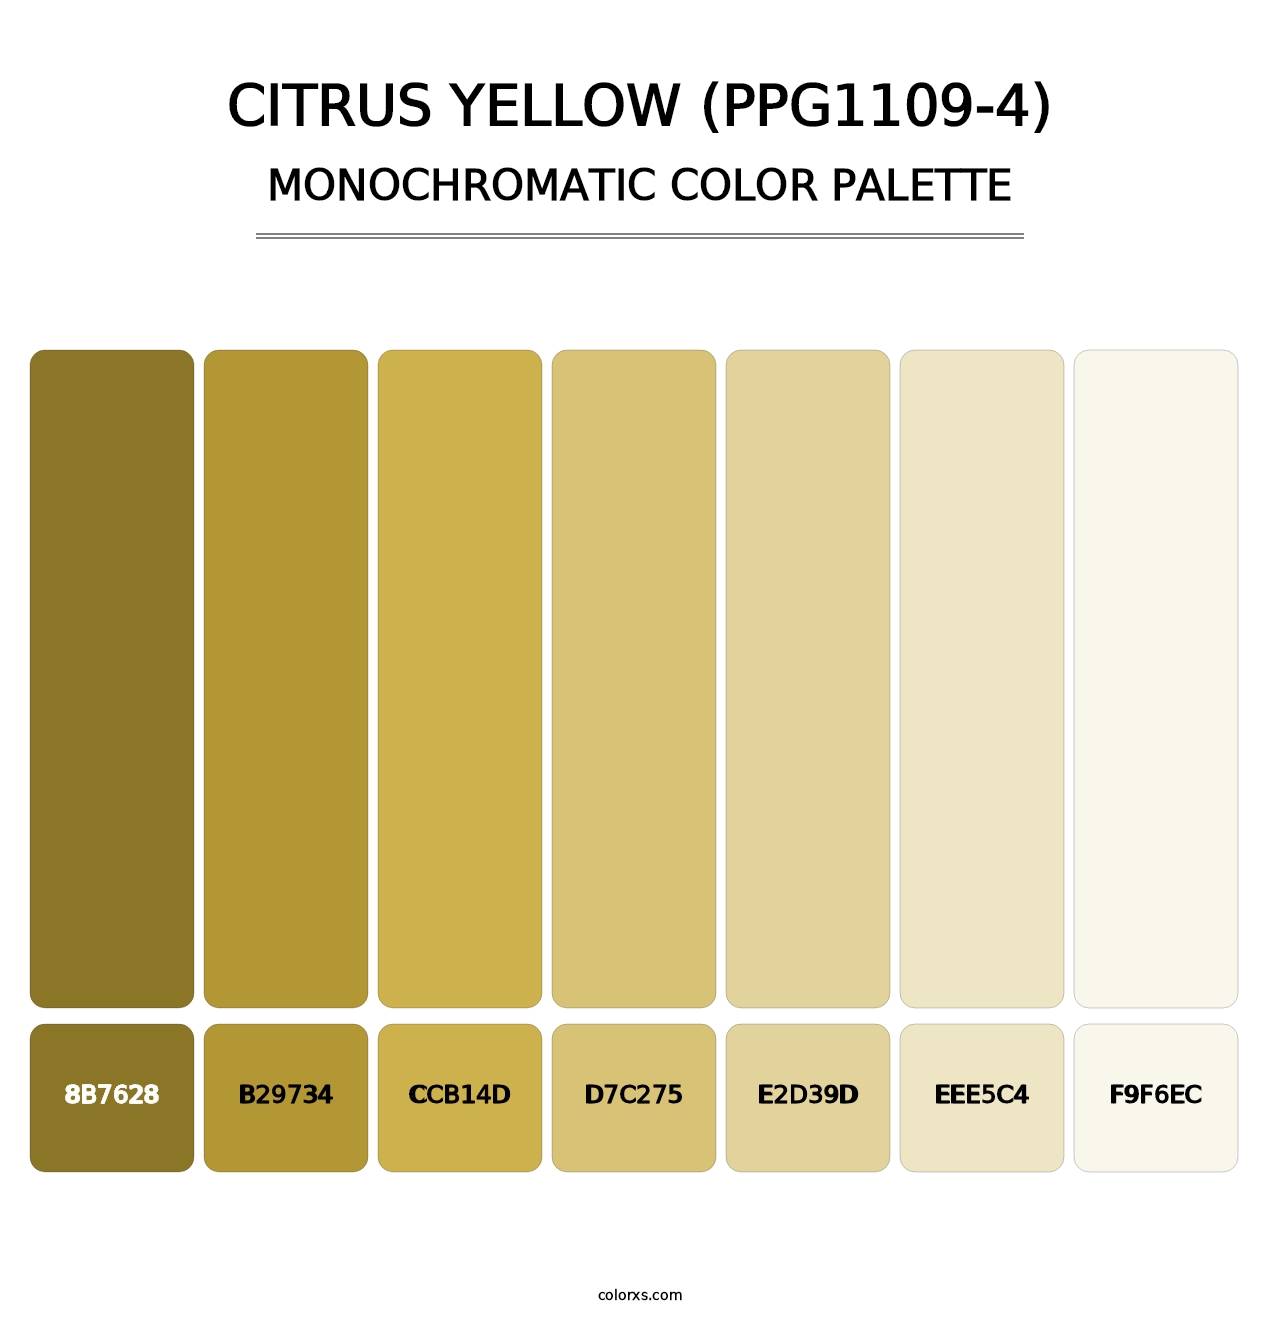 Citrus Yellow (PPG1109-4) - Monochromatic Color Palette